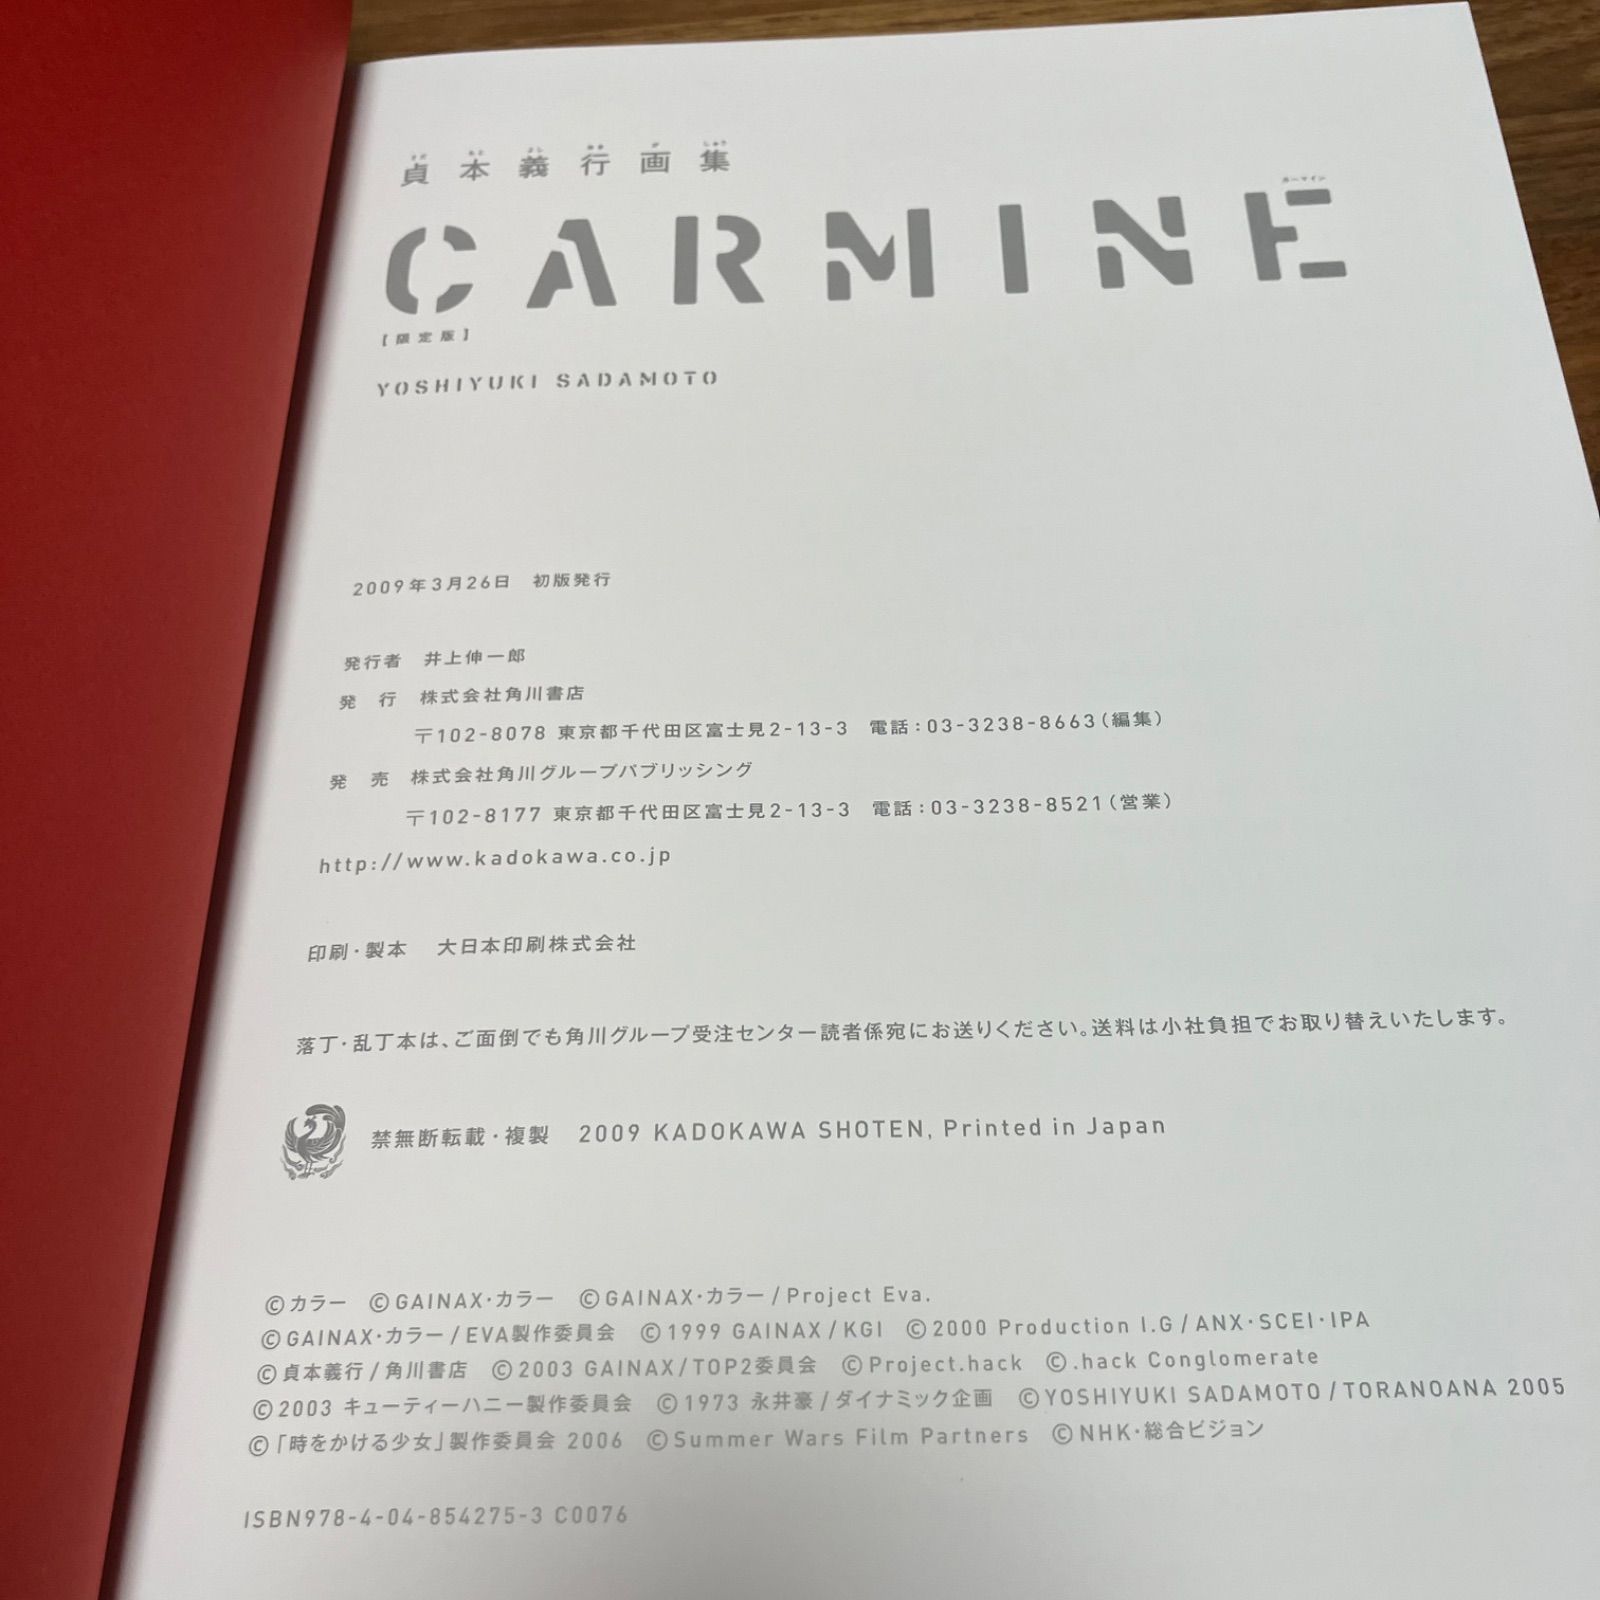 初回限定版】 CARMINE 貞本義行画集 限定版 カーマイン - キリン書店